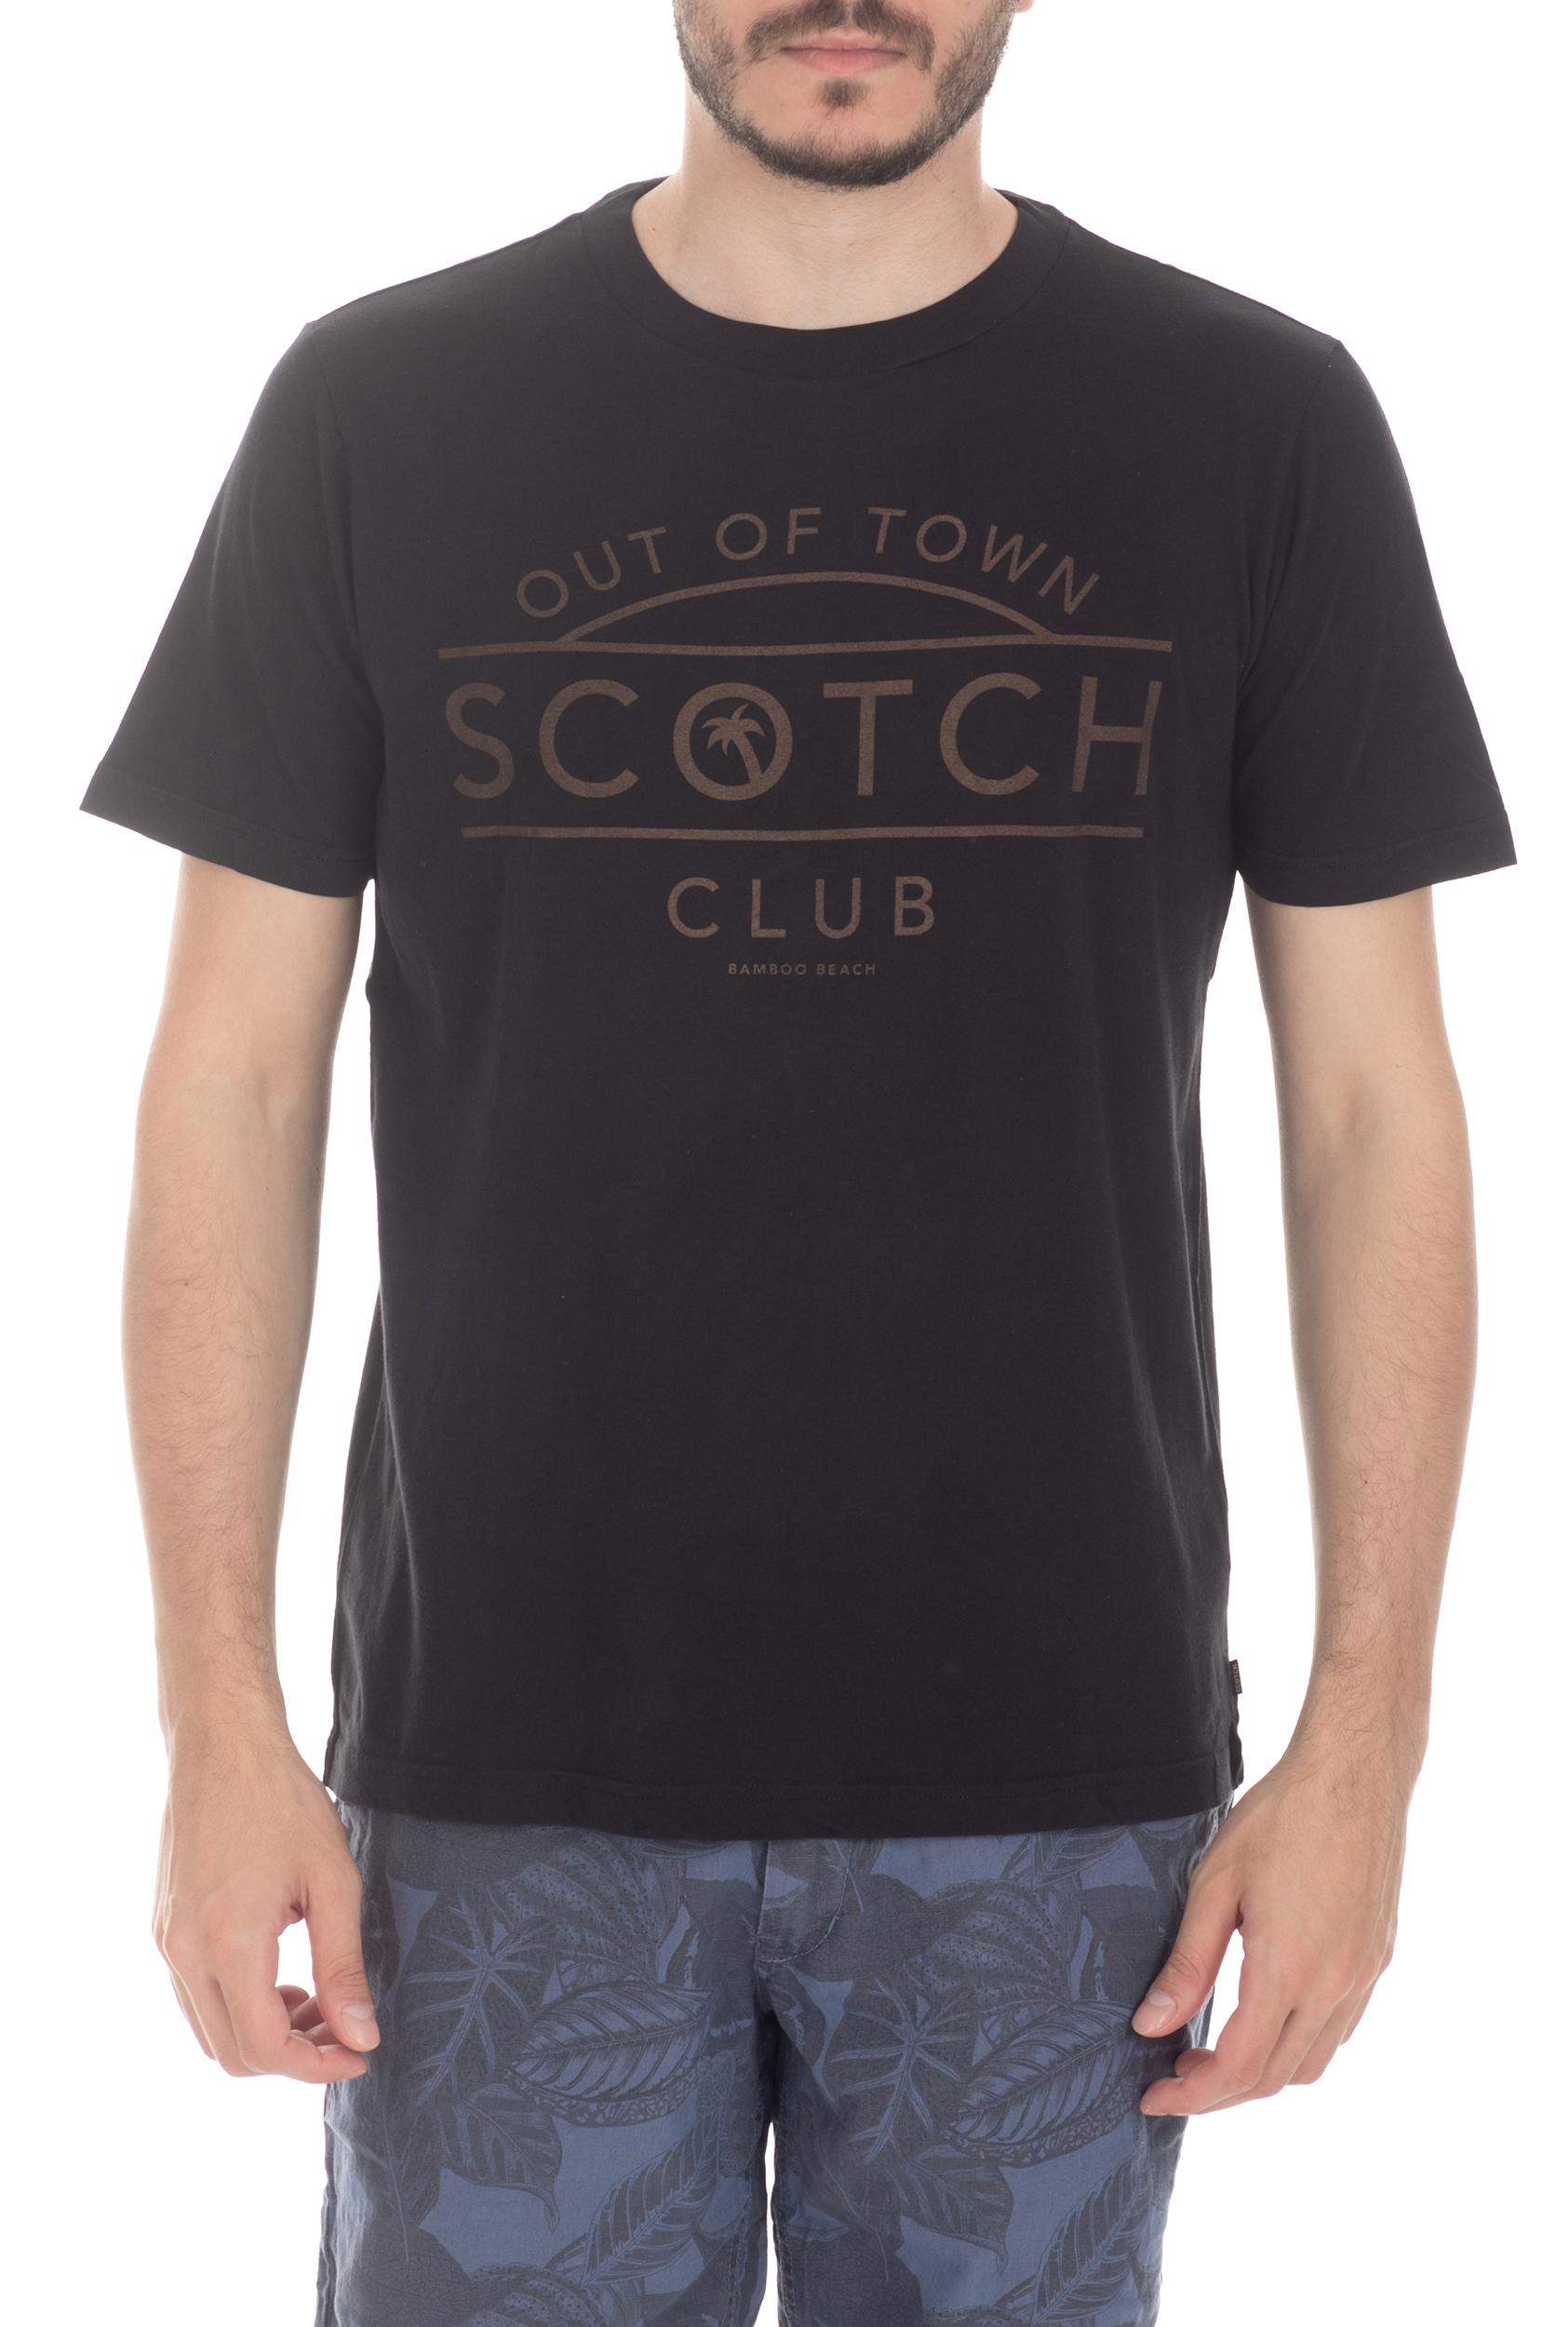 Ανδρικά/Ρούχα/Μπλούζες/Κοντομάνικες SCOTCH & SODA - Ανδρική μπλούζα SCOTCH & SODA μαύρη